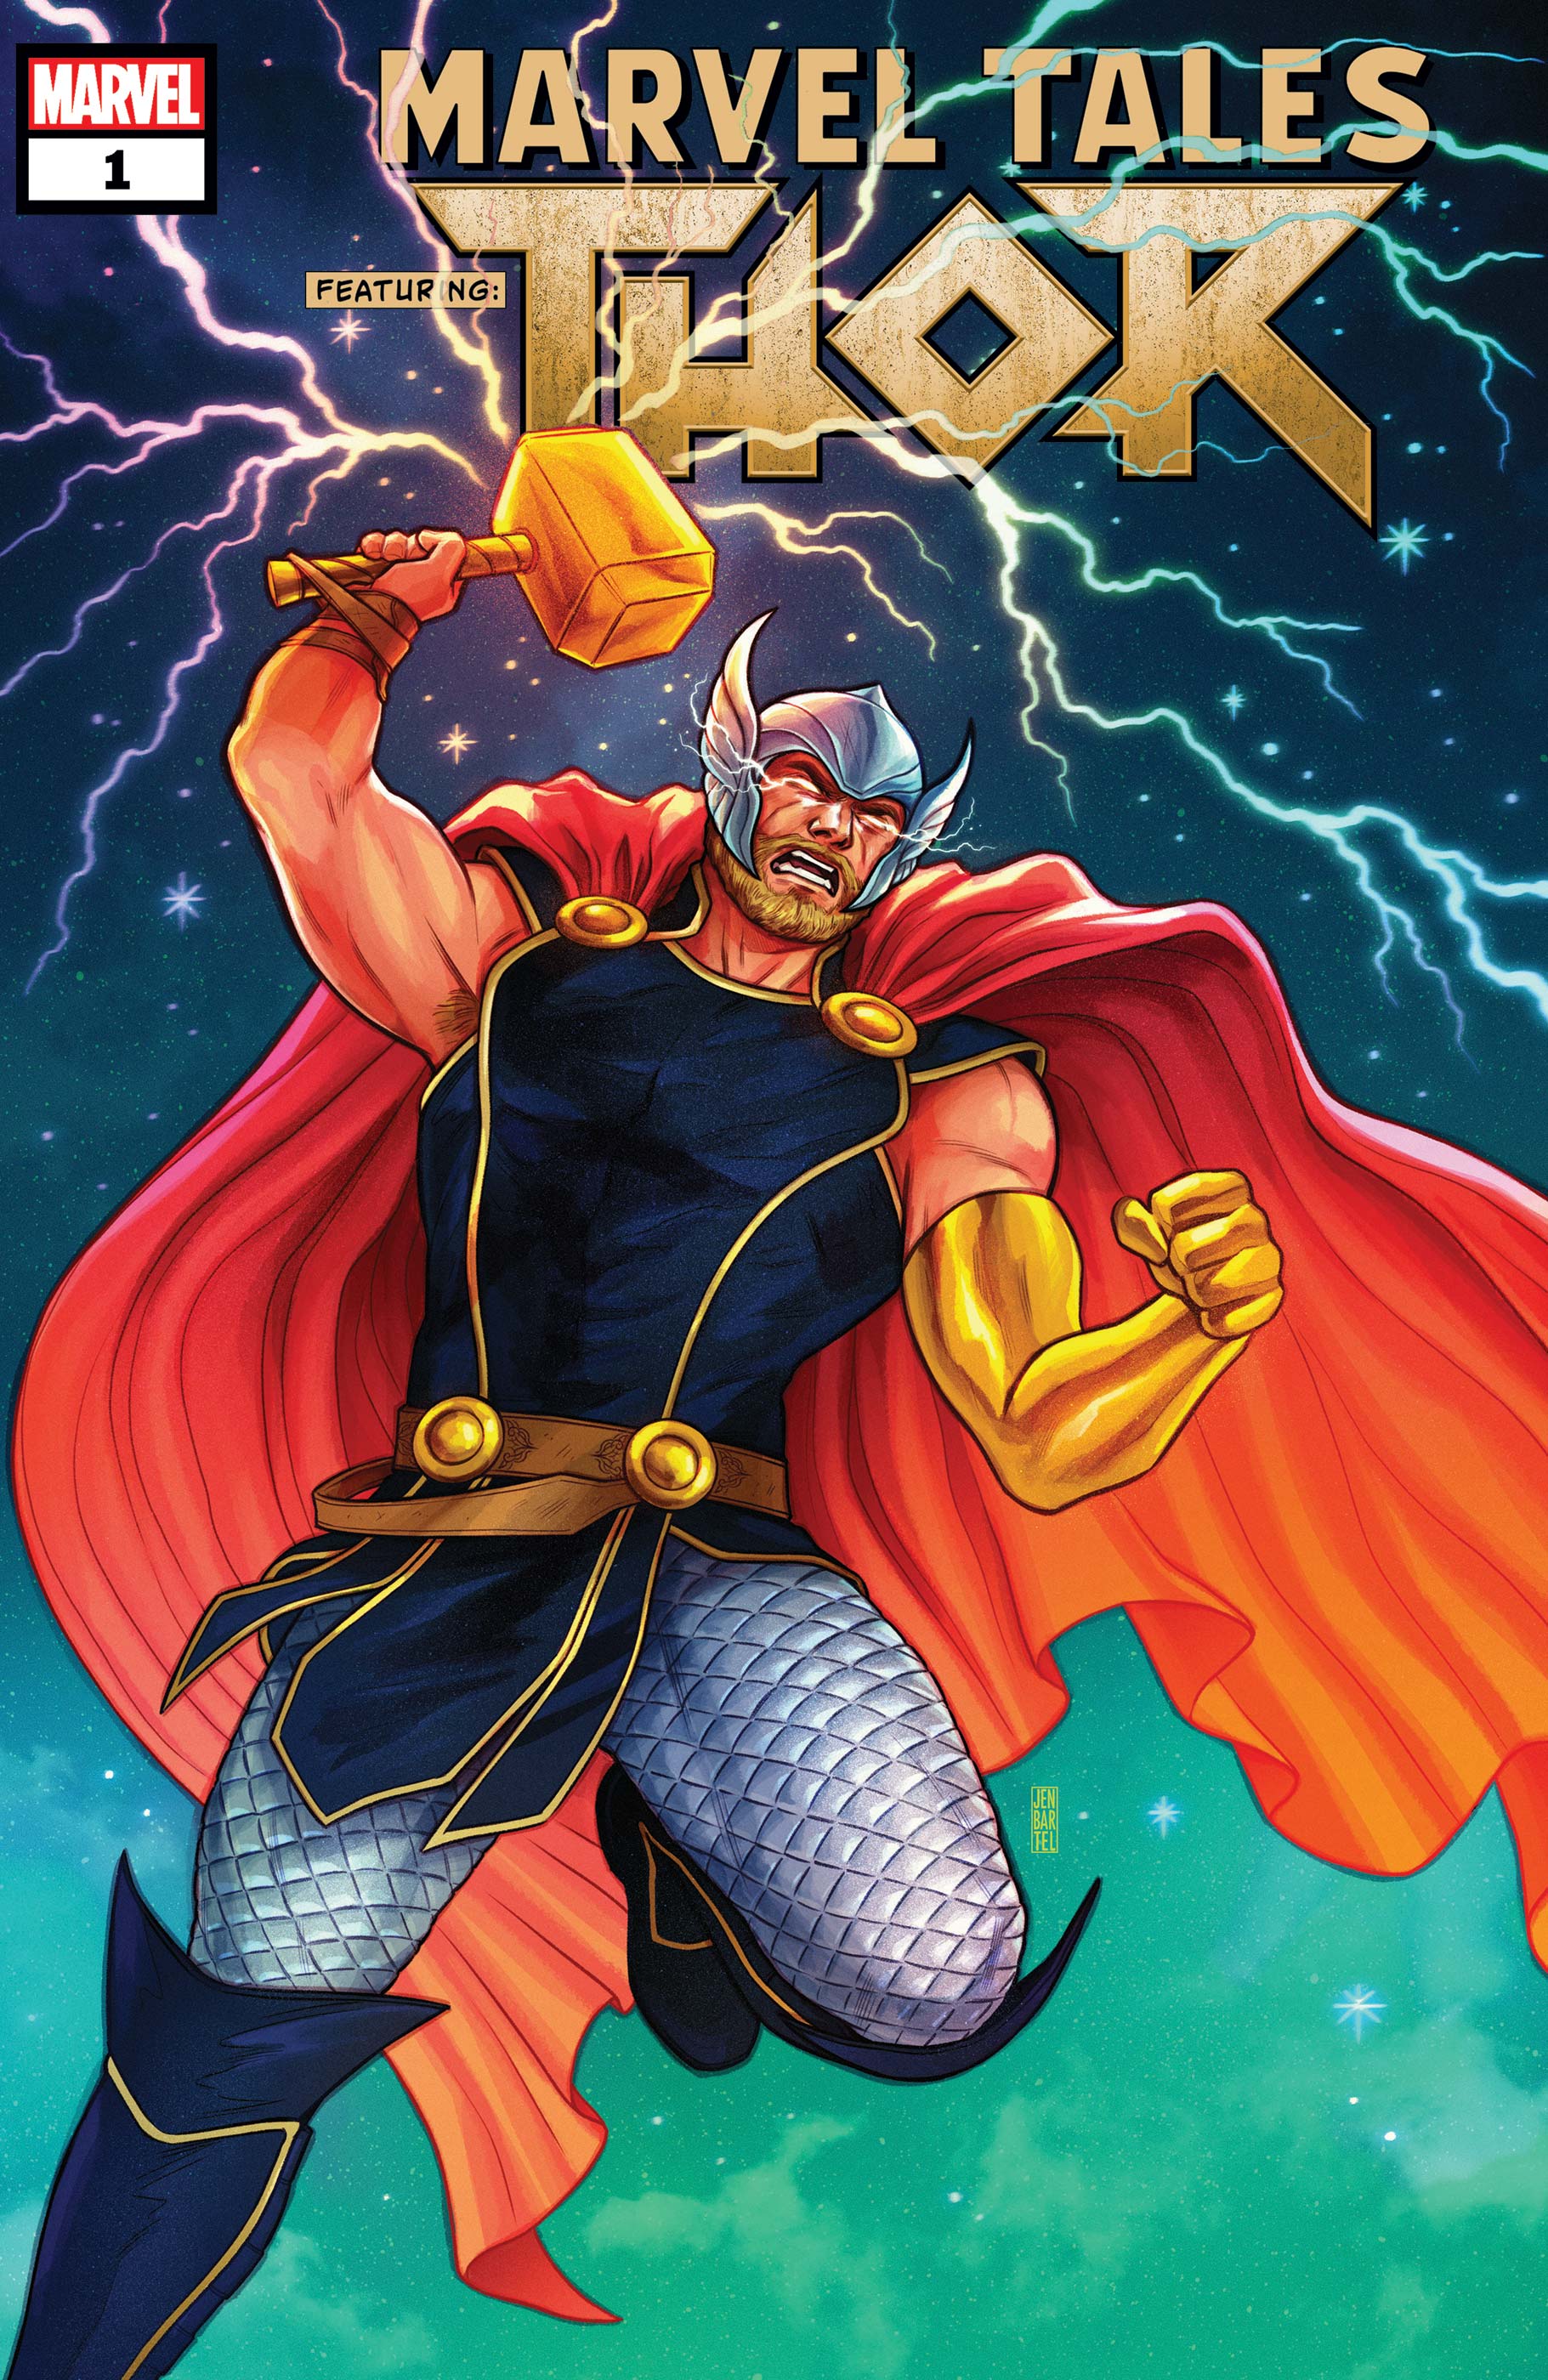 Marvel Tales: Thor (2019) #1